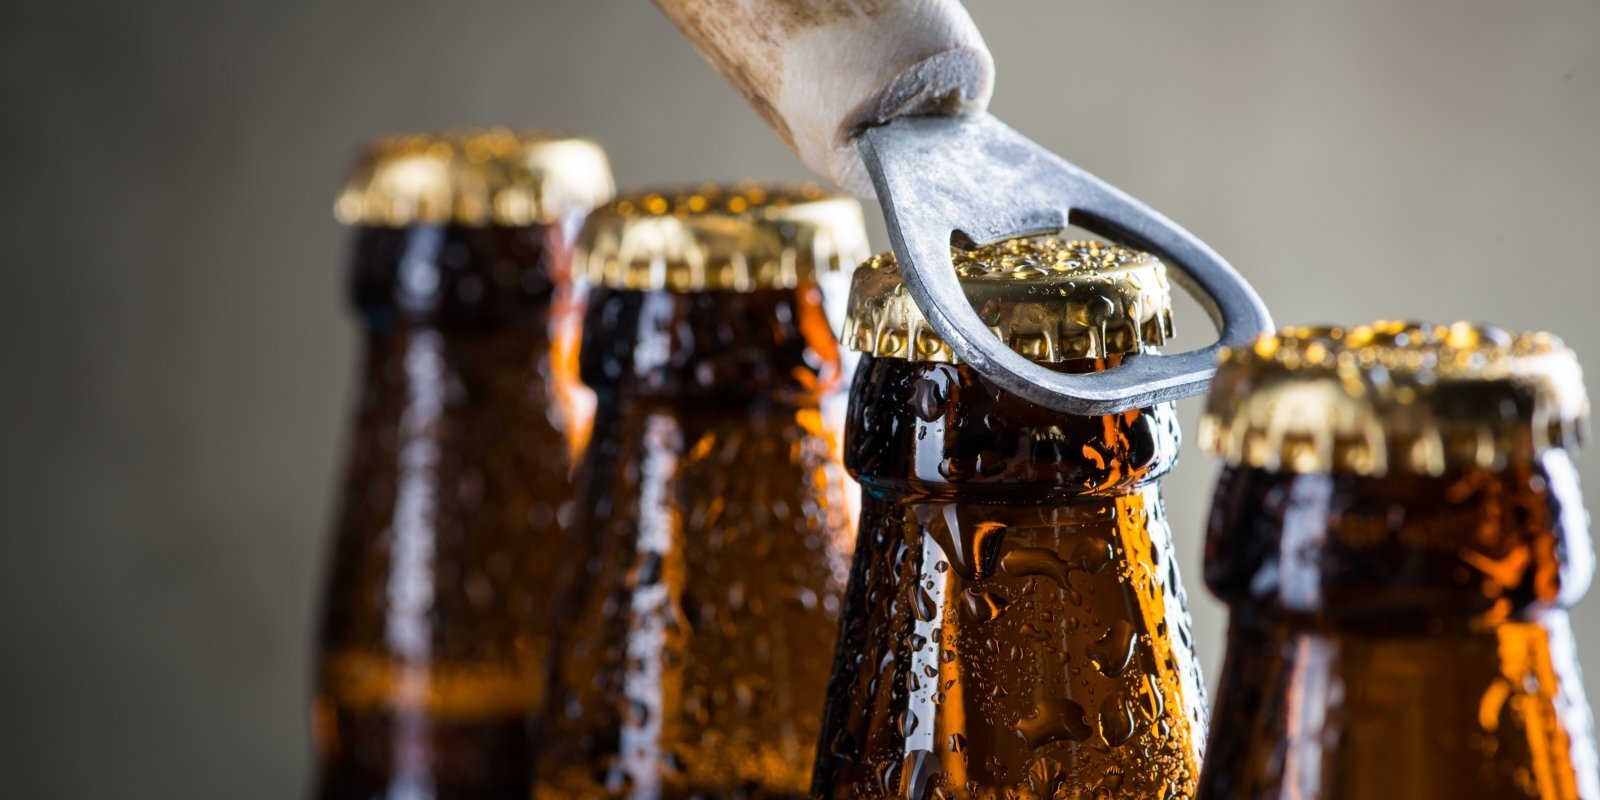 Dažādas alus šķirnes dažādiem patērētājiem. Kas notiek Latvijas alus tirgū?